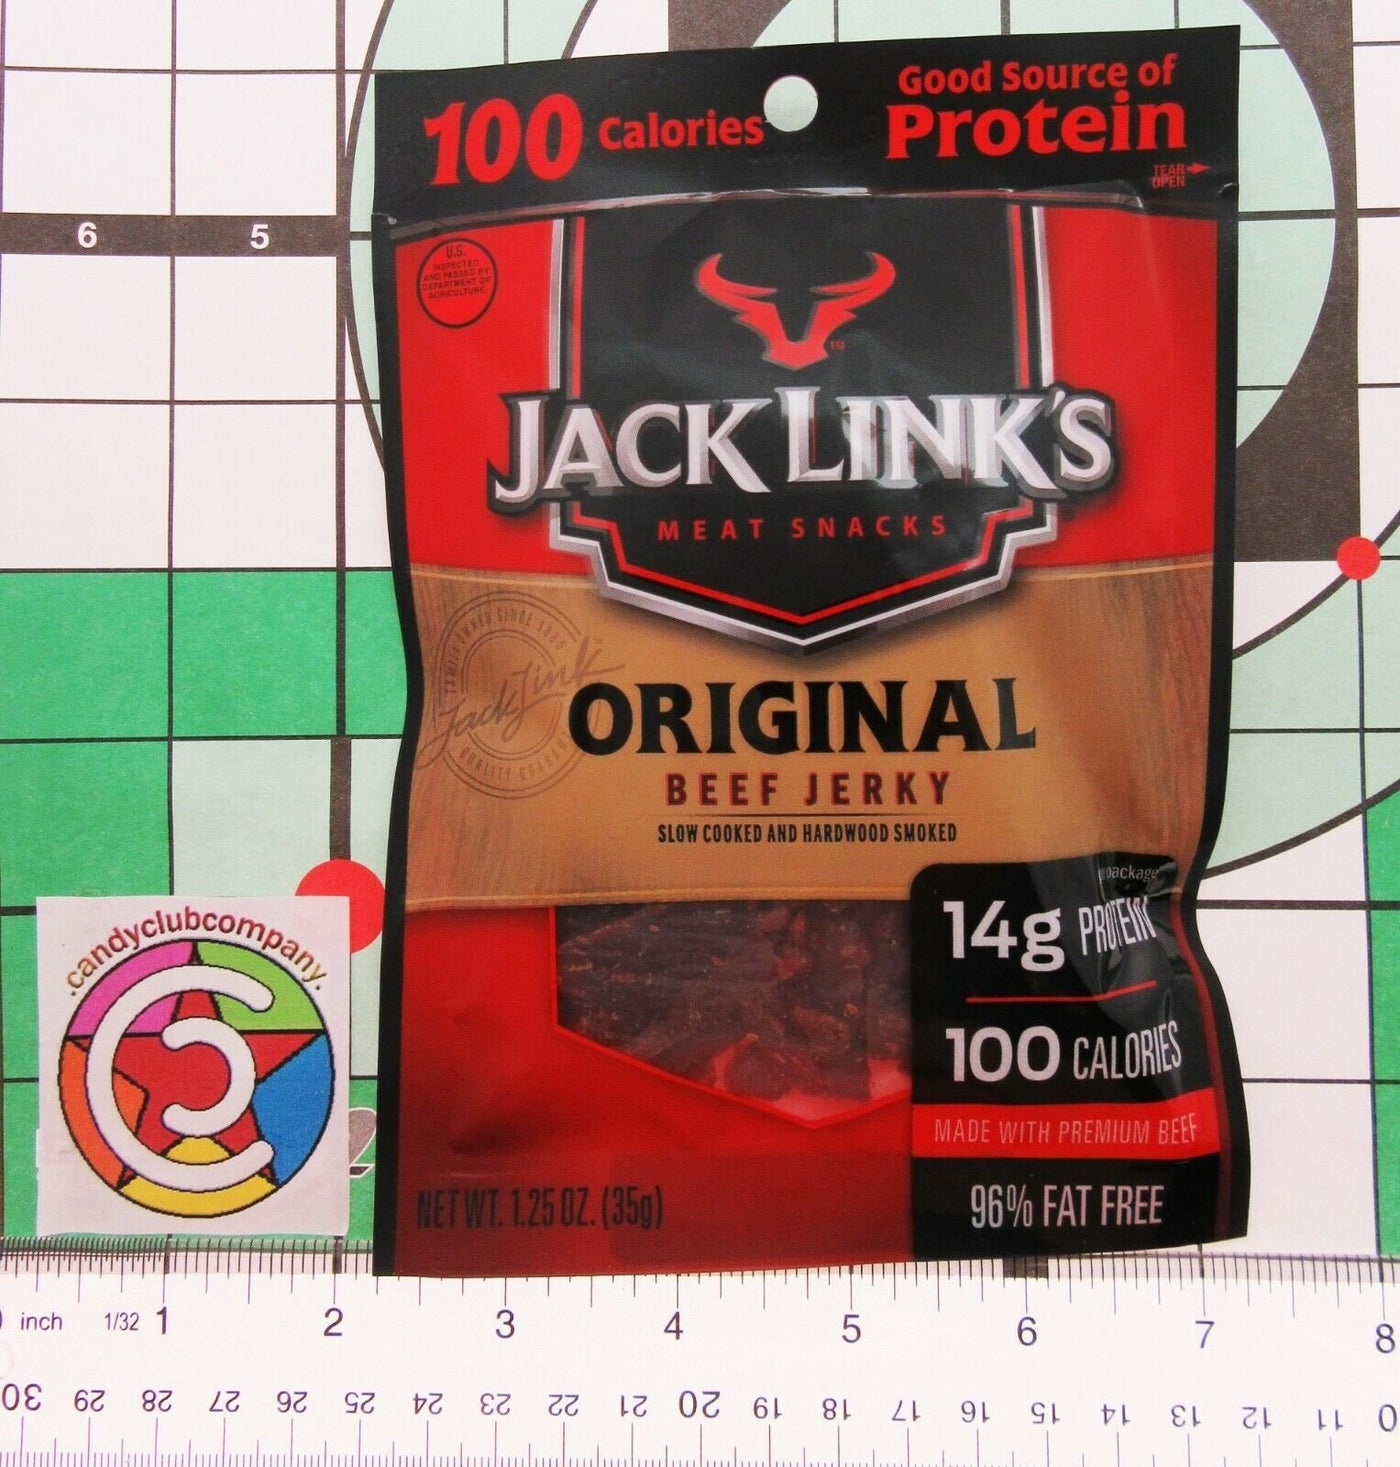 Jack Links Variety 9 pack Teriyaki Original Tender Bites Beef Jerky Dried Meat